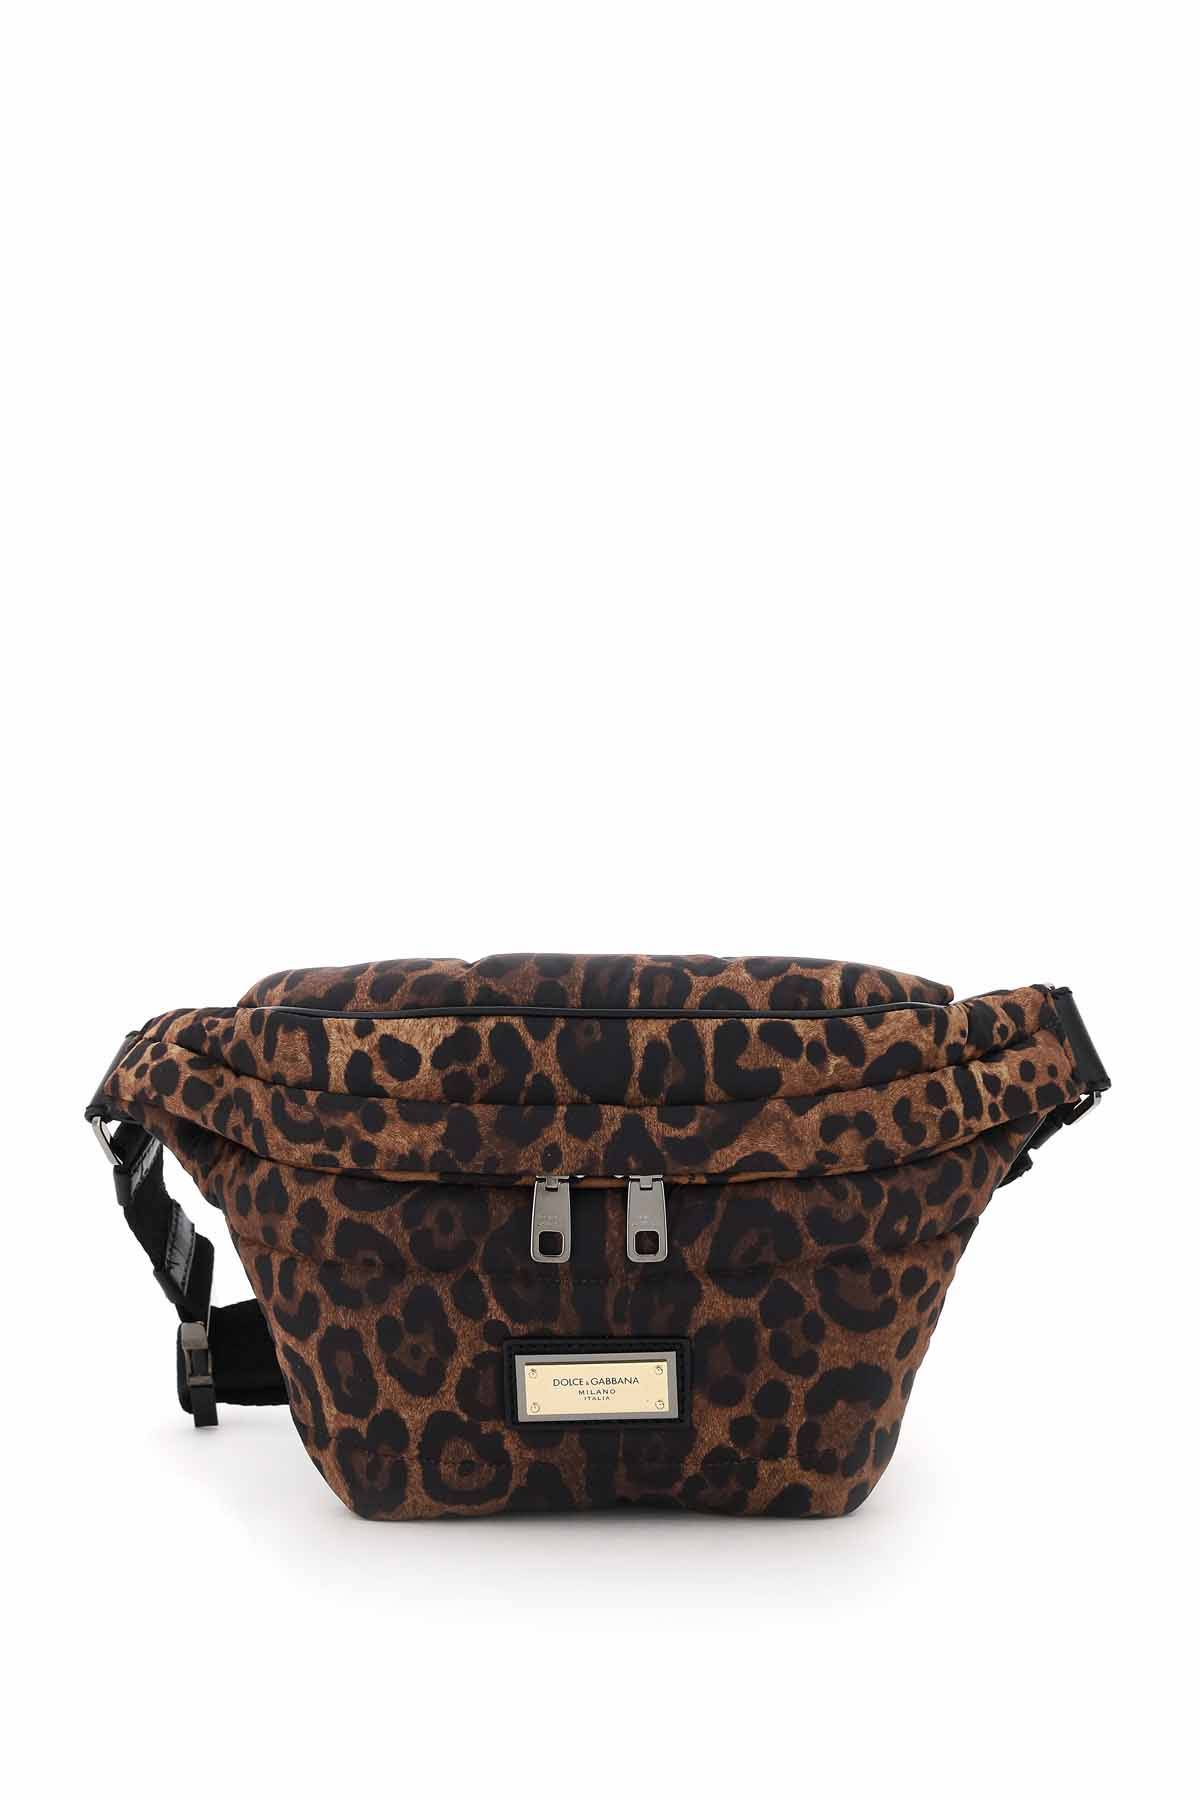 Dolce & Gabbana DOLCE & GABBANA leopard-print nylon beltbag